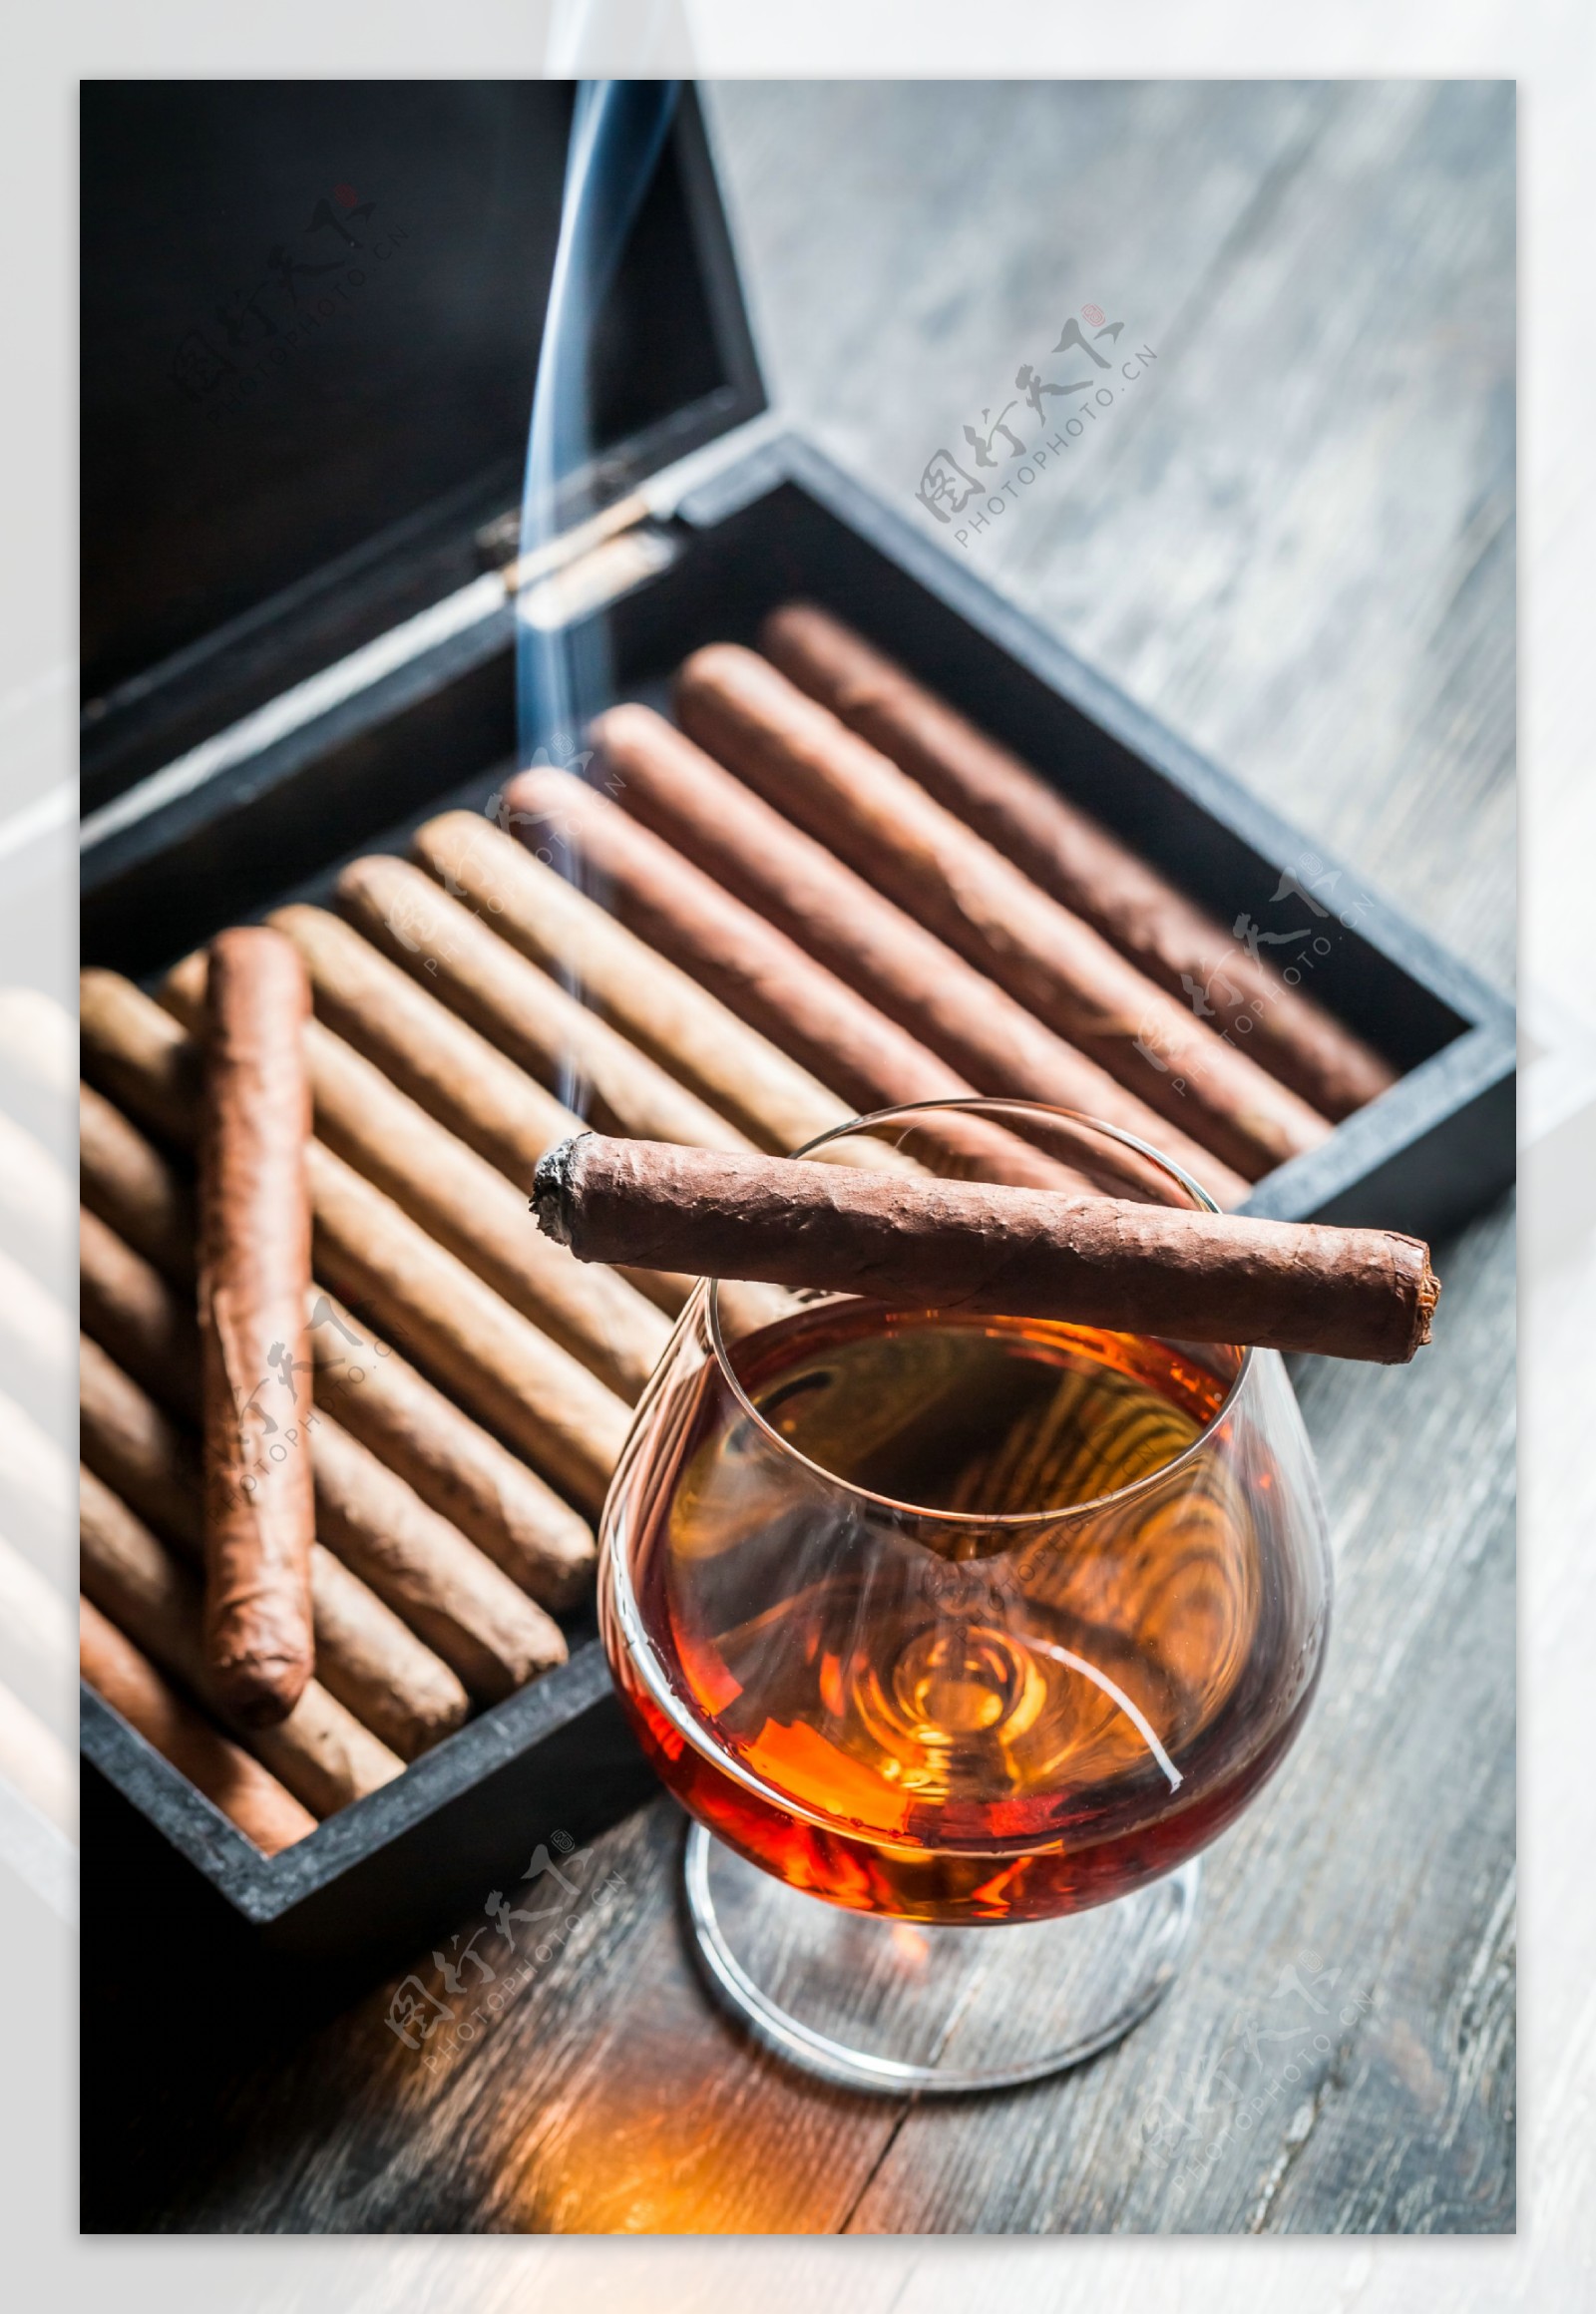 雪茄与威士忌图片